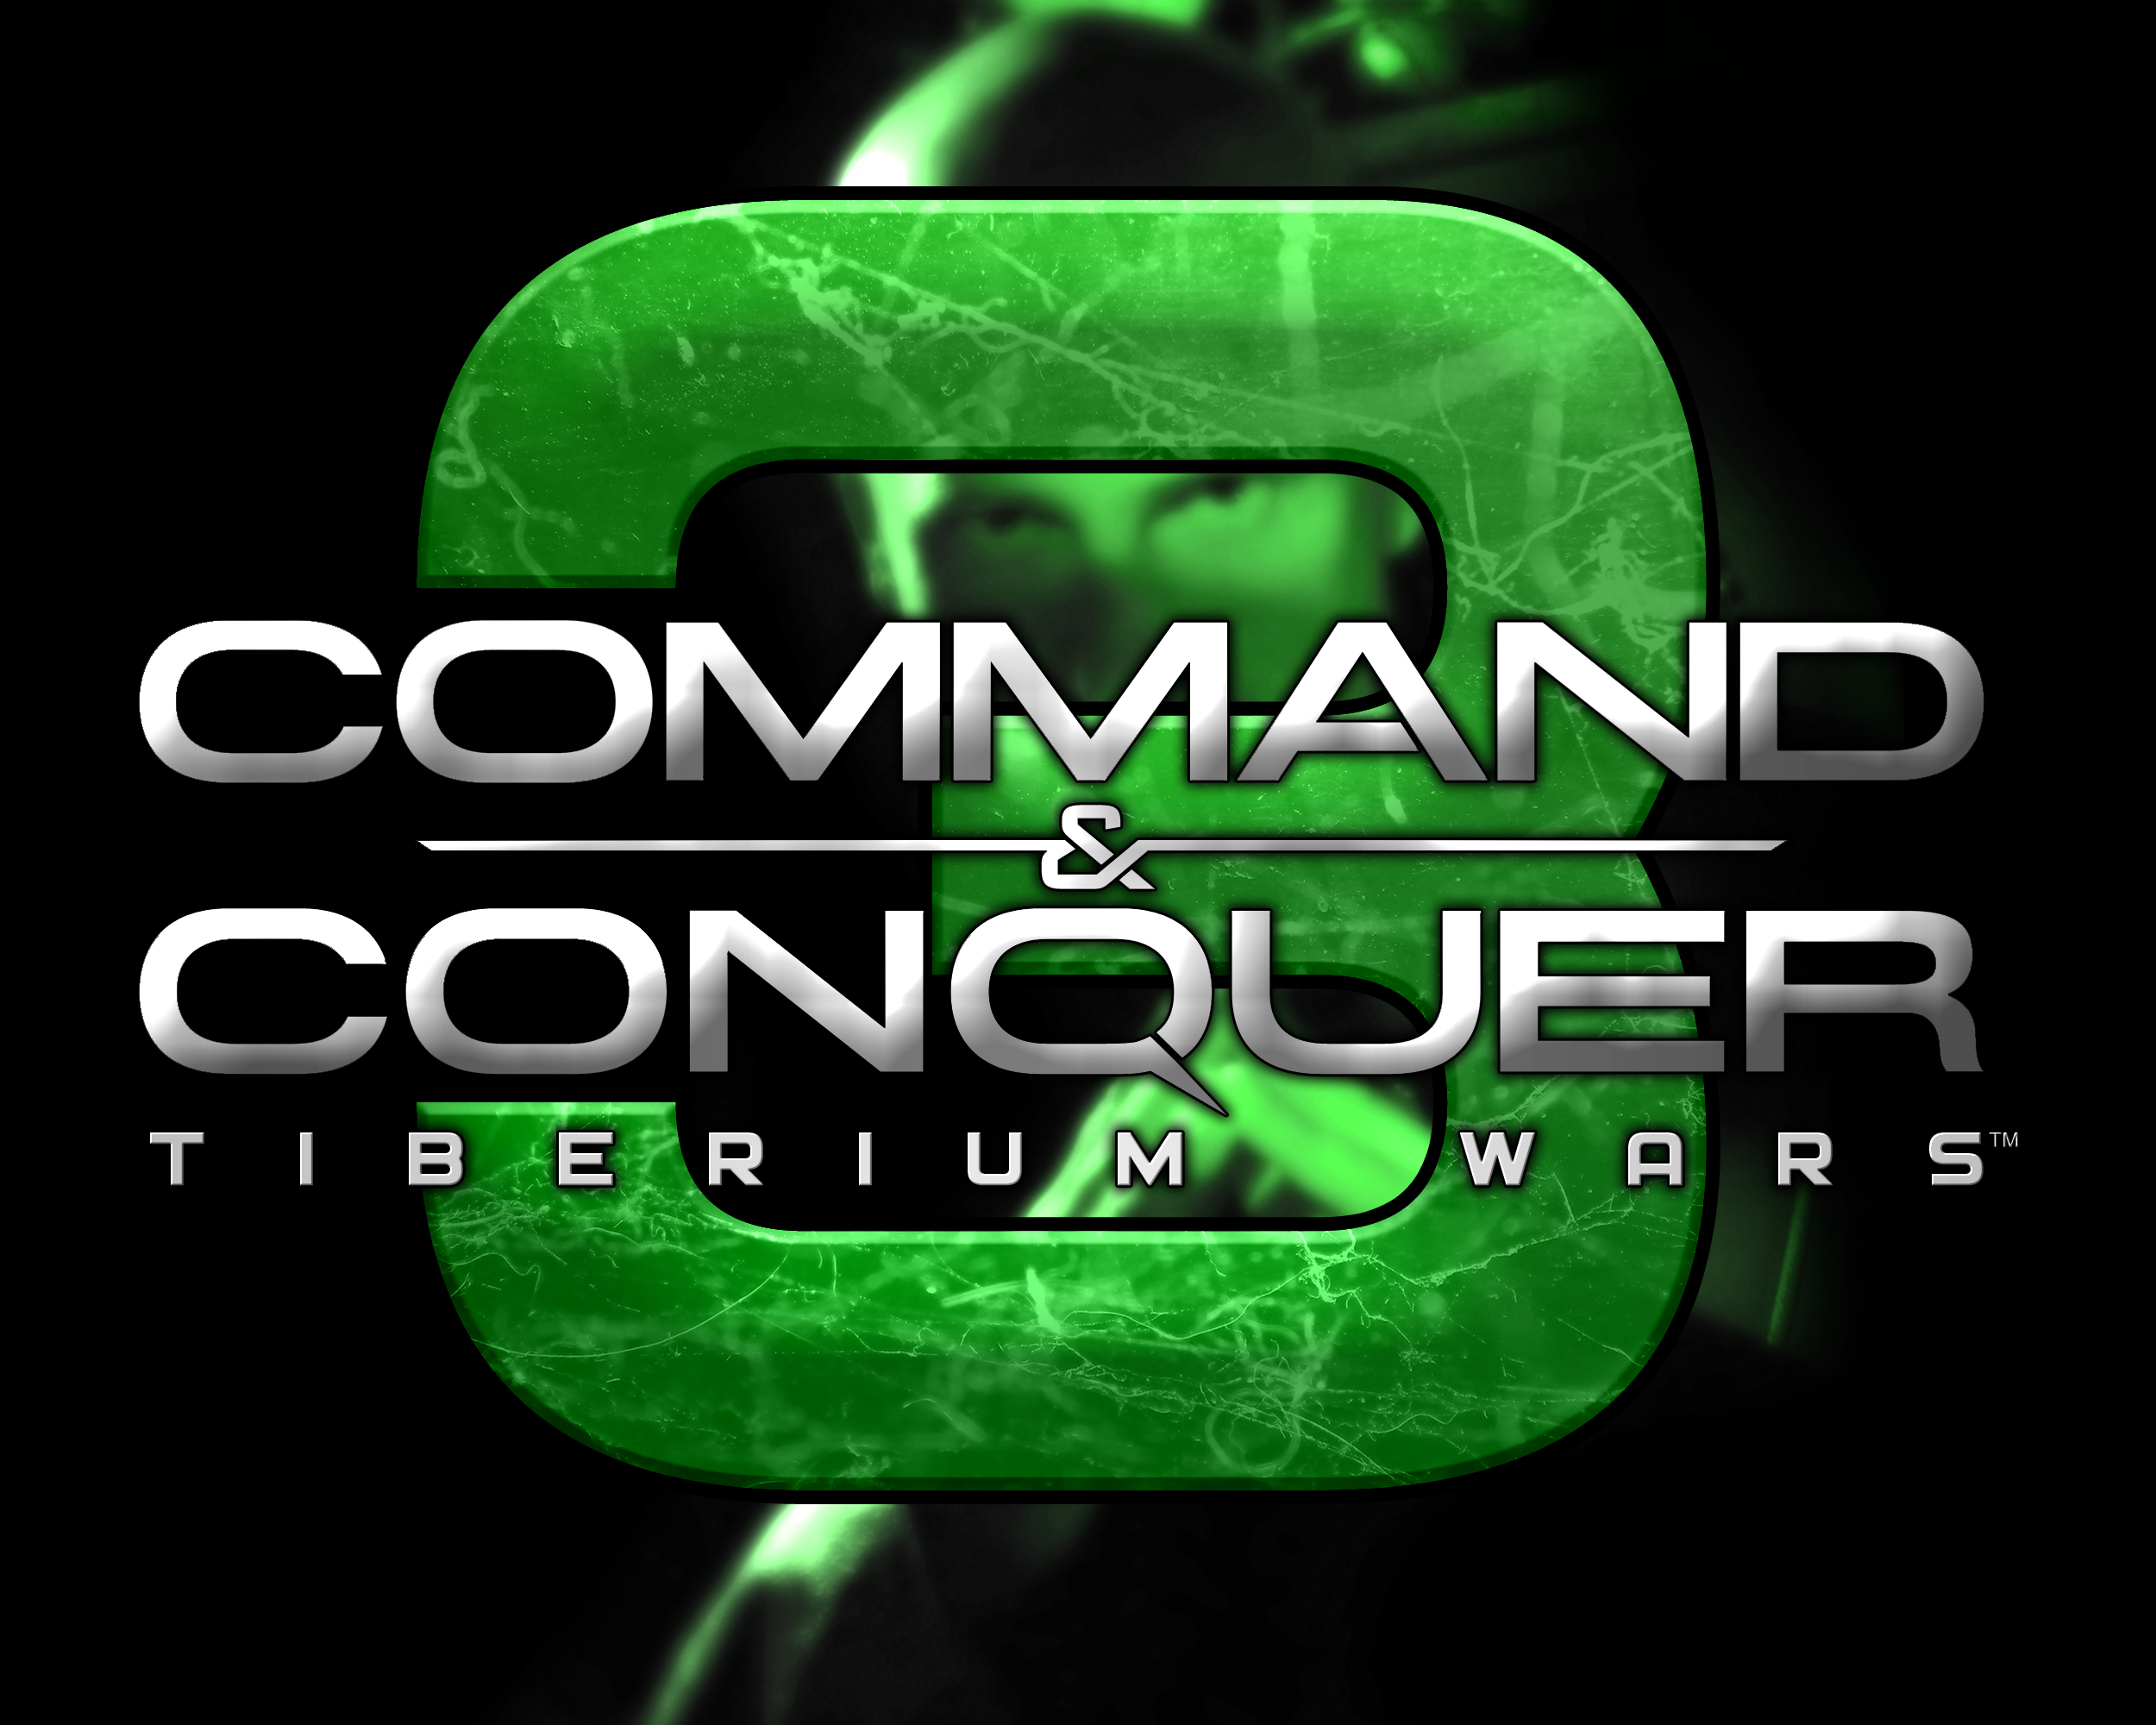 Command And Conquer 3 Tiberium Wars | НОД | Мусорополис